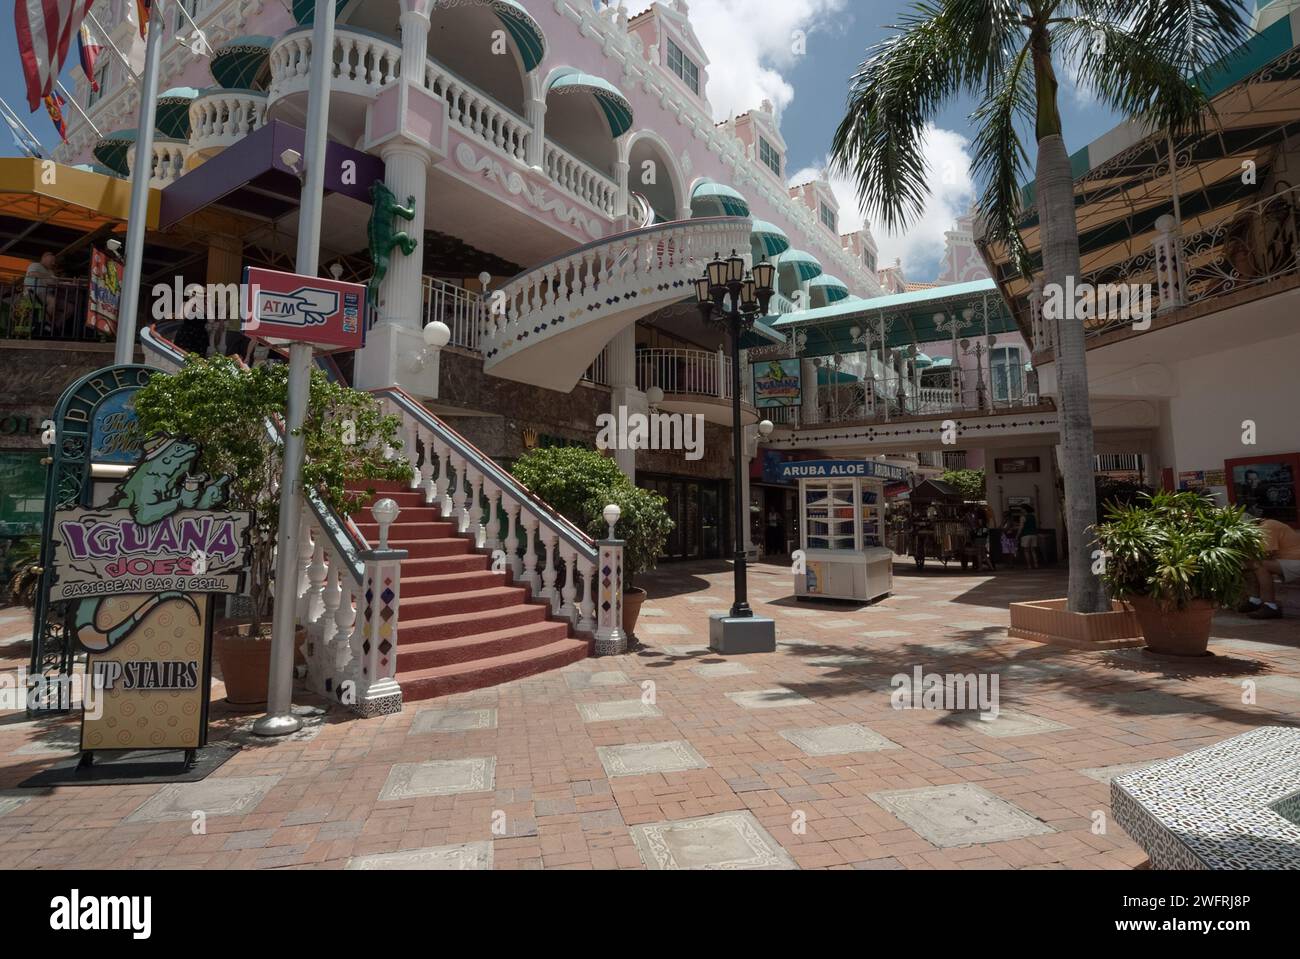 05/11/2010 - Aruba: Questa fotografia mostra una vivace piazza commerciale all'aperto ad Aruba, caratterizzata dalla sua architettura colorata e dall'invitante scalinata Foto Stock